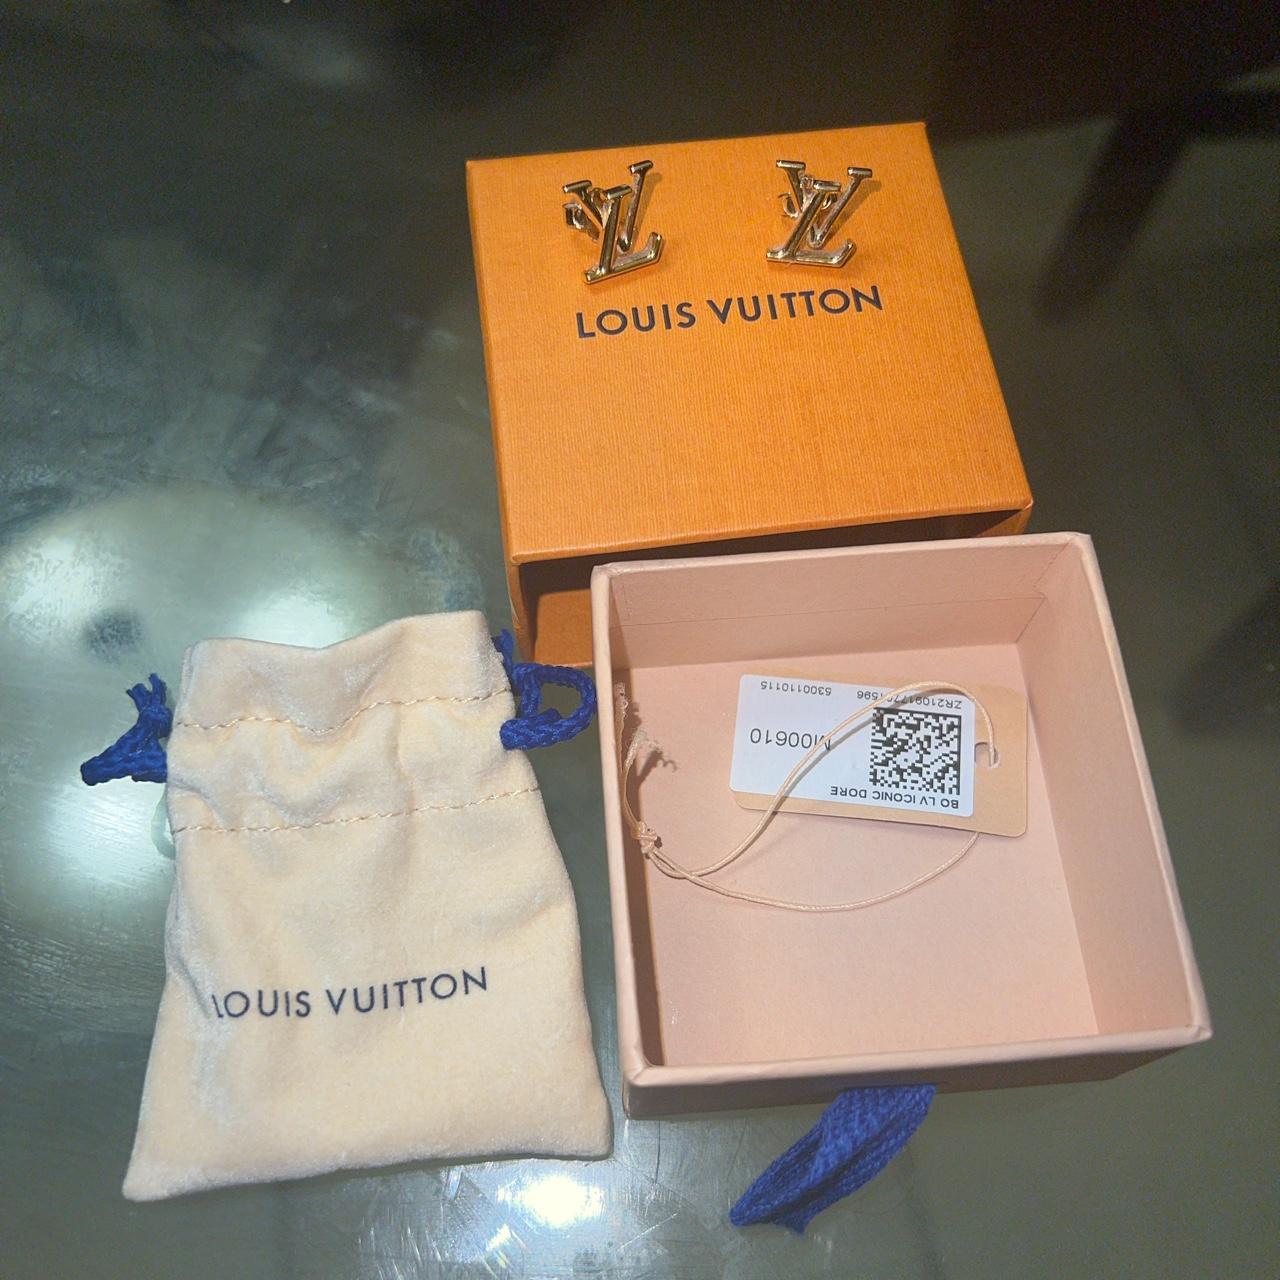 Vendo scialle Originale Louis Vuitton Monogram shine - Depop